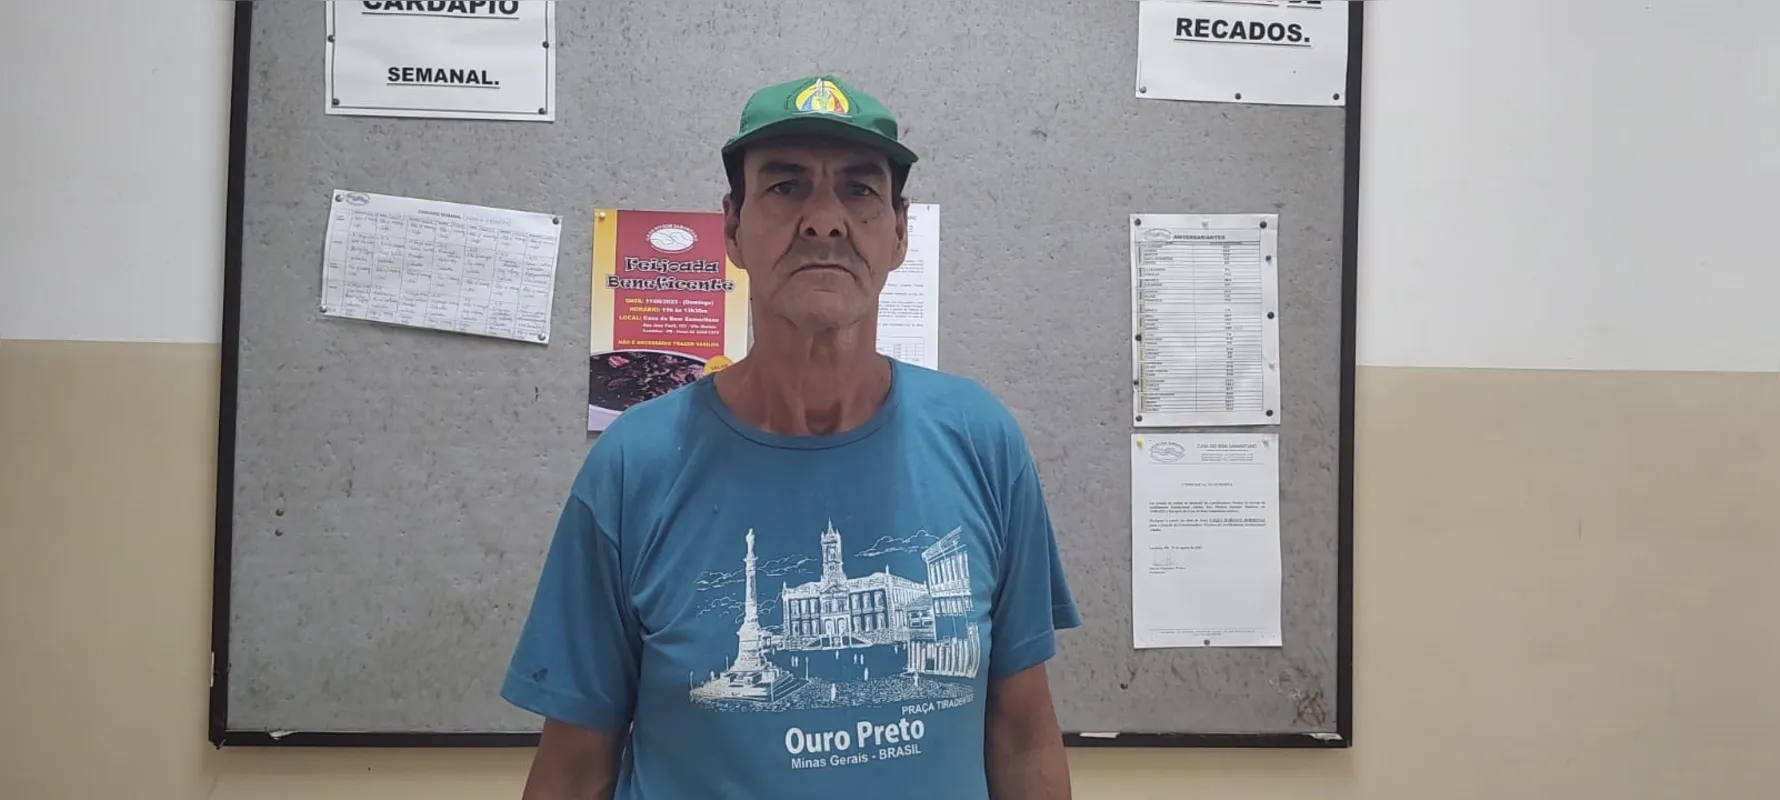 Antônio Rocha Filho, 57 anos, tem uma voz inconfundível, além de cantar - seu repertório tem mais de 600 músicas - também recita